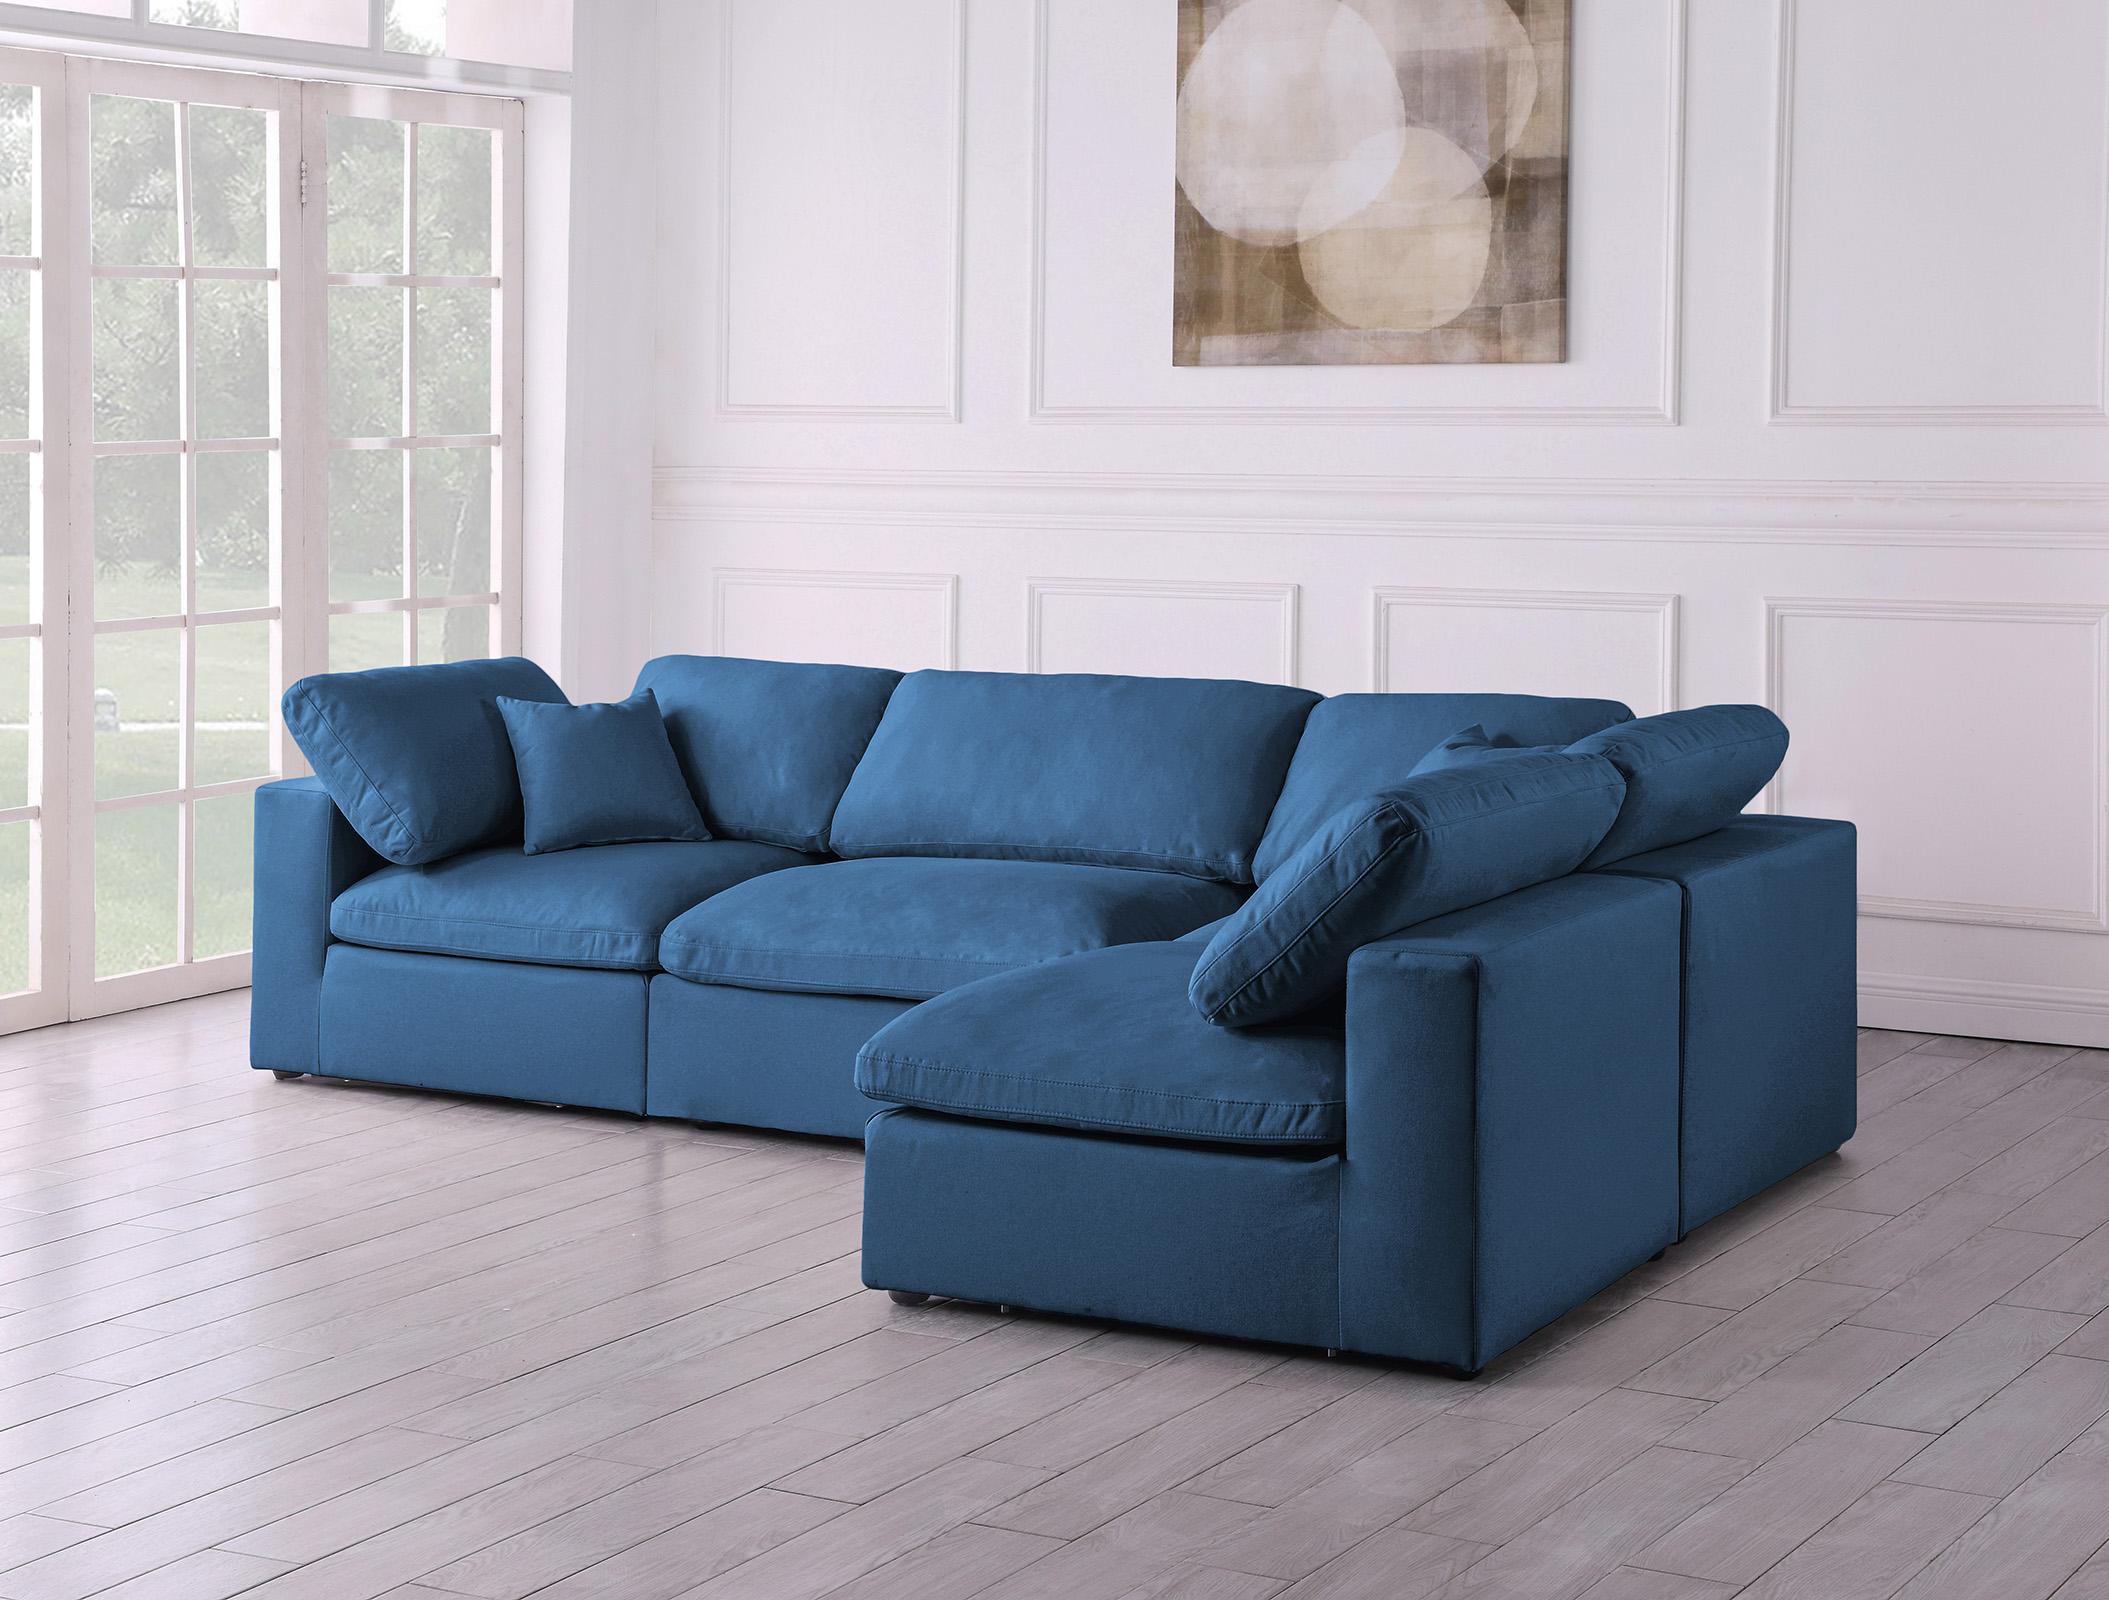 

    
602Navy-Sec4B Meridian Furniture Modular Sectional Sofa
